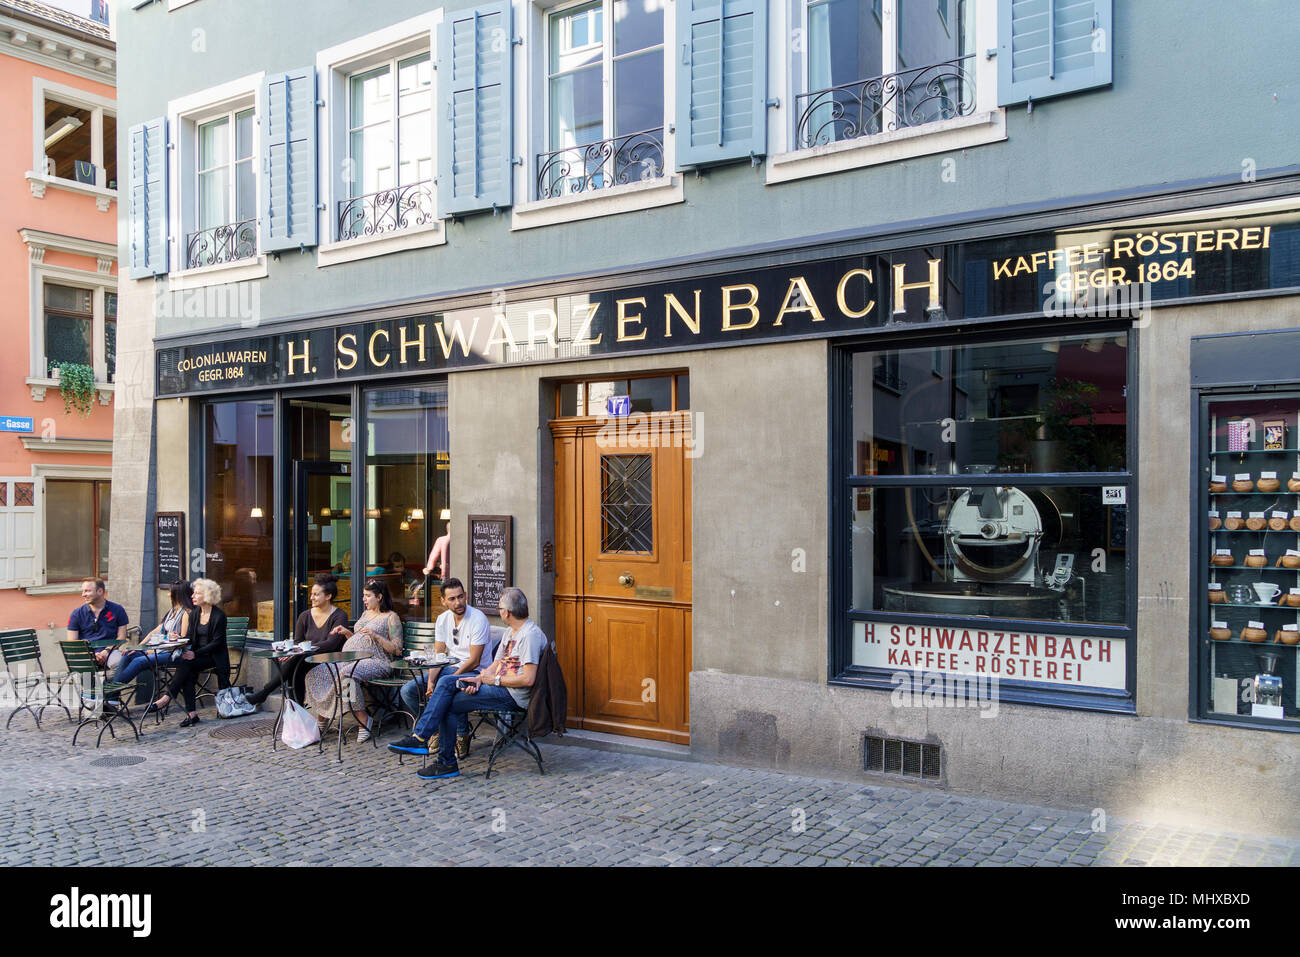 Zurigo, Svizzera - 16 Ottobre 2017: Vetrine e un cartello della più antica caffetteria Schwarzenbach Foto Stock